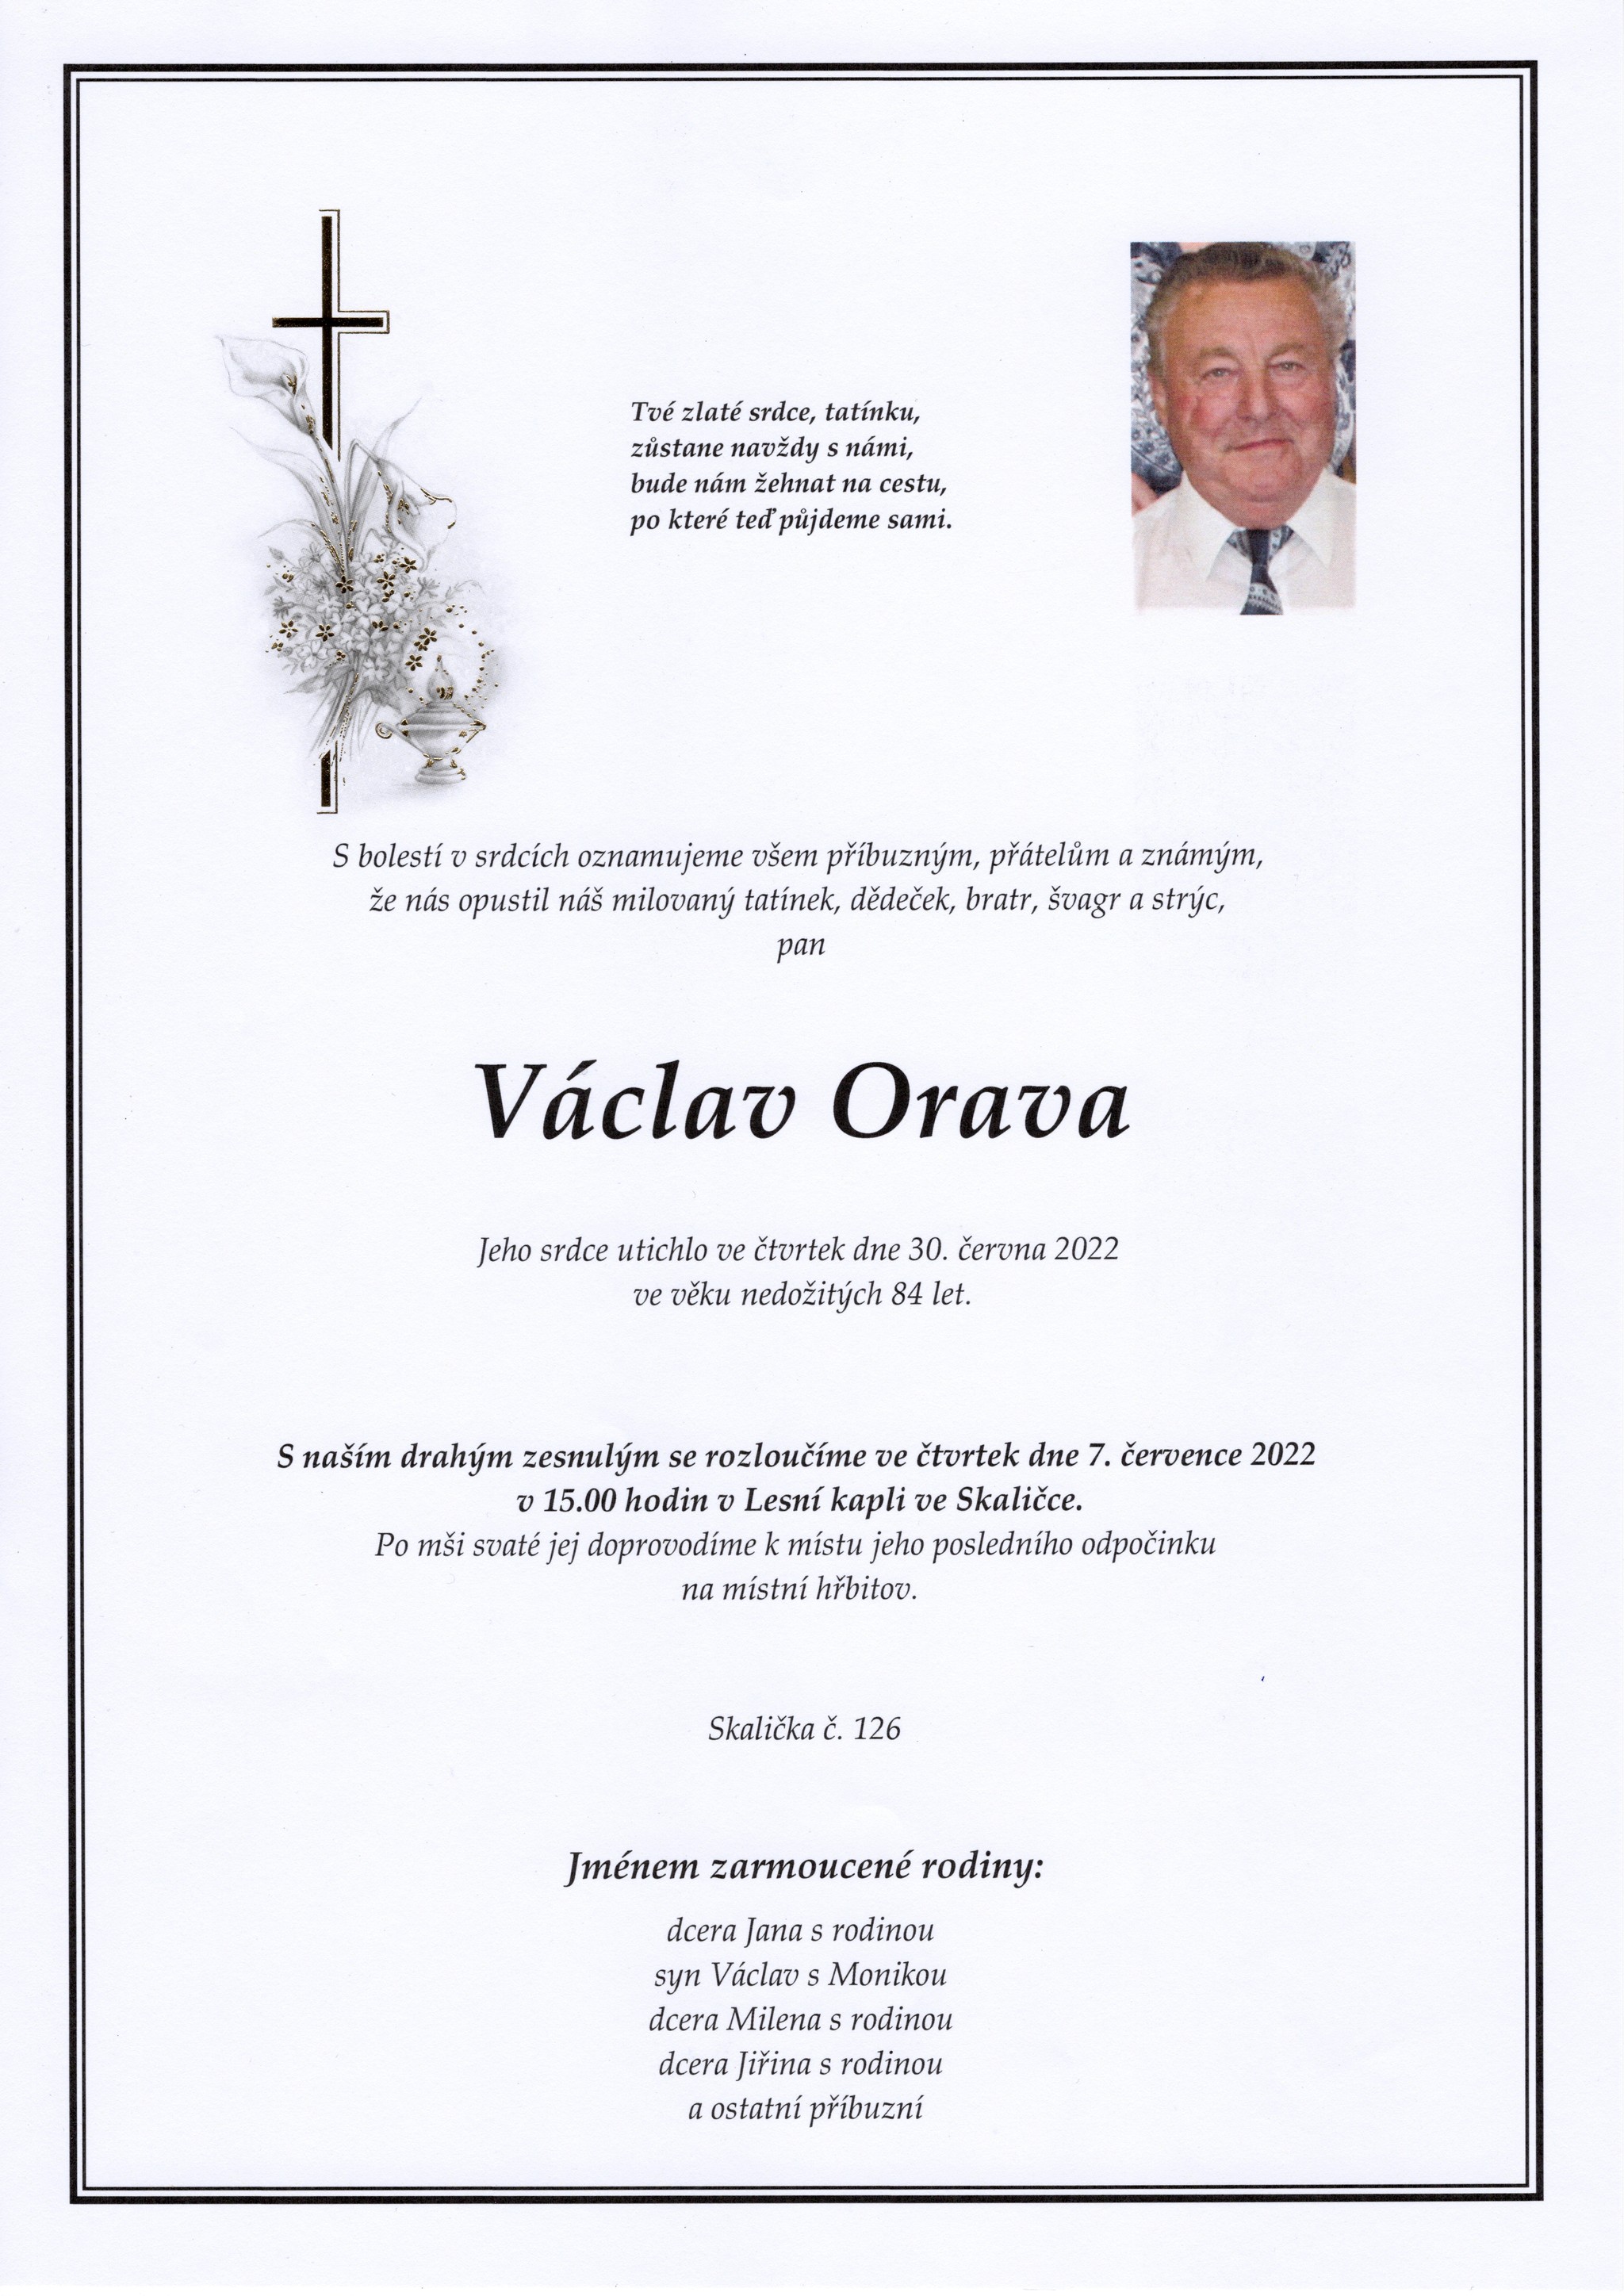 Václav Orava